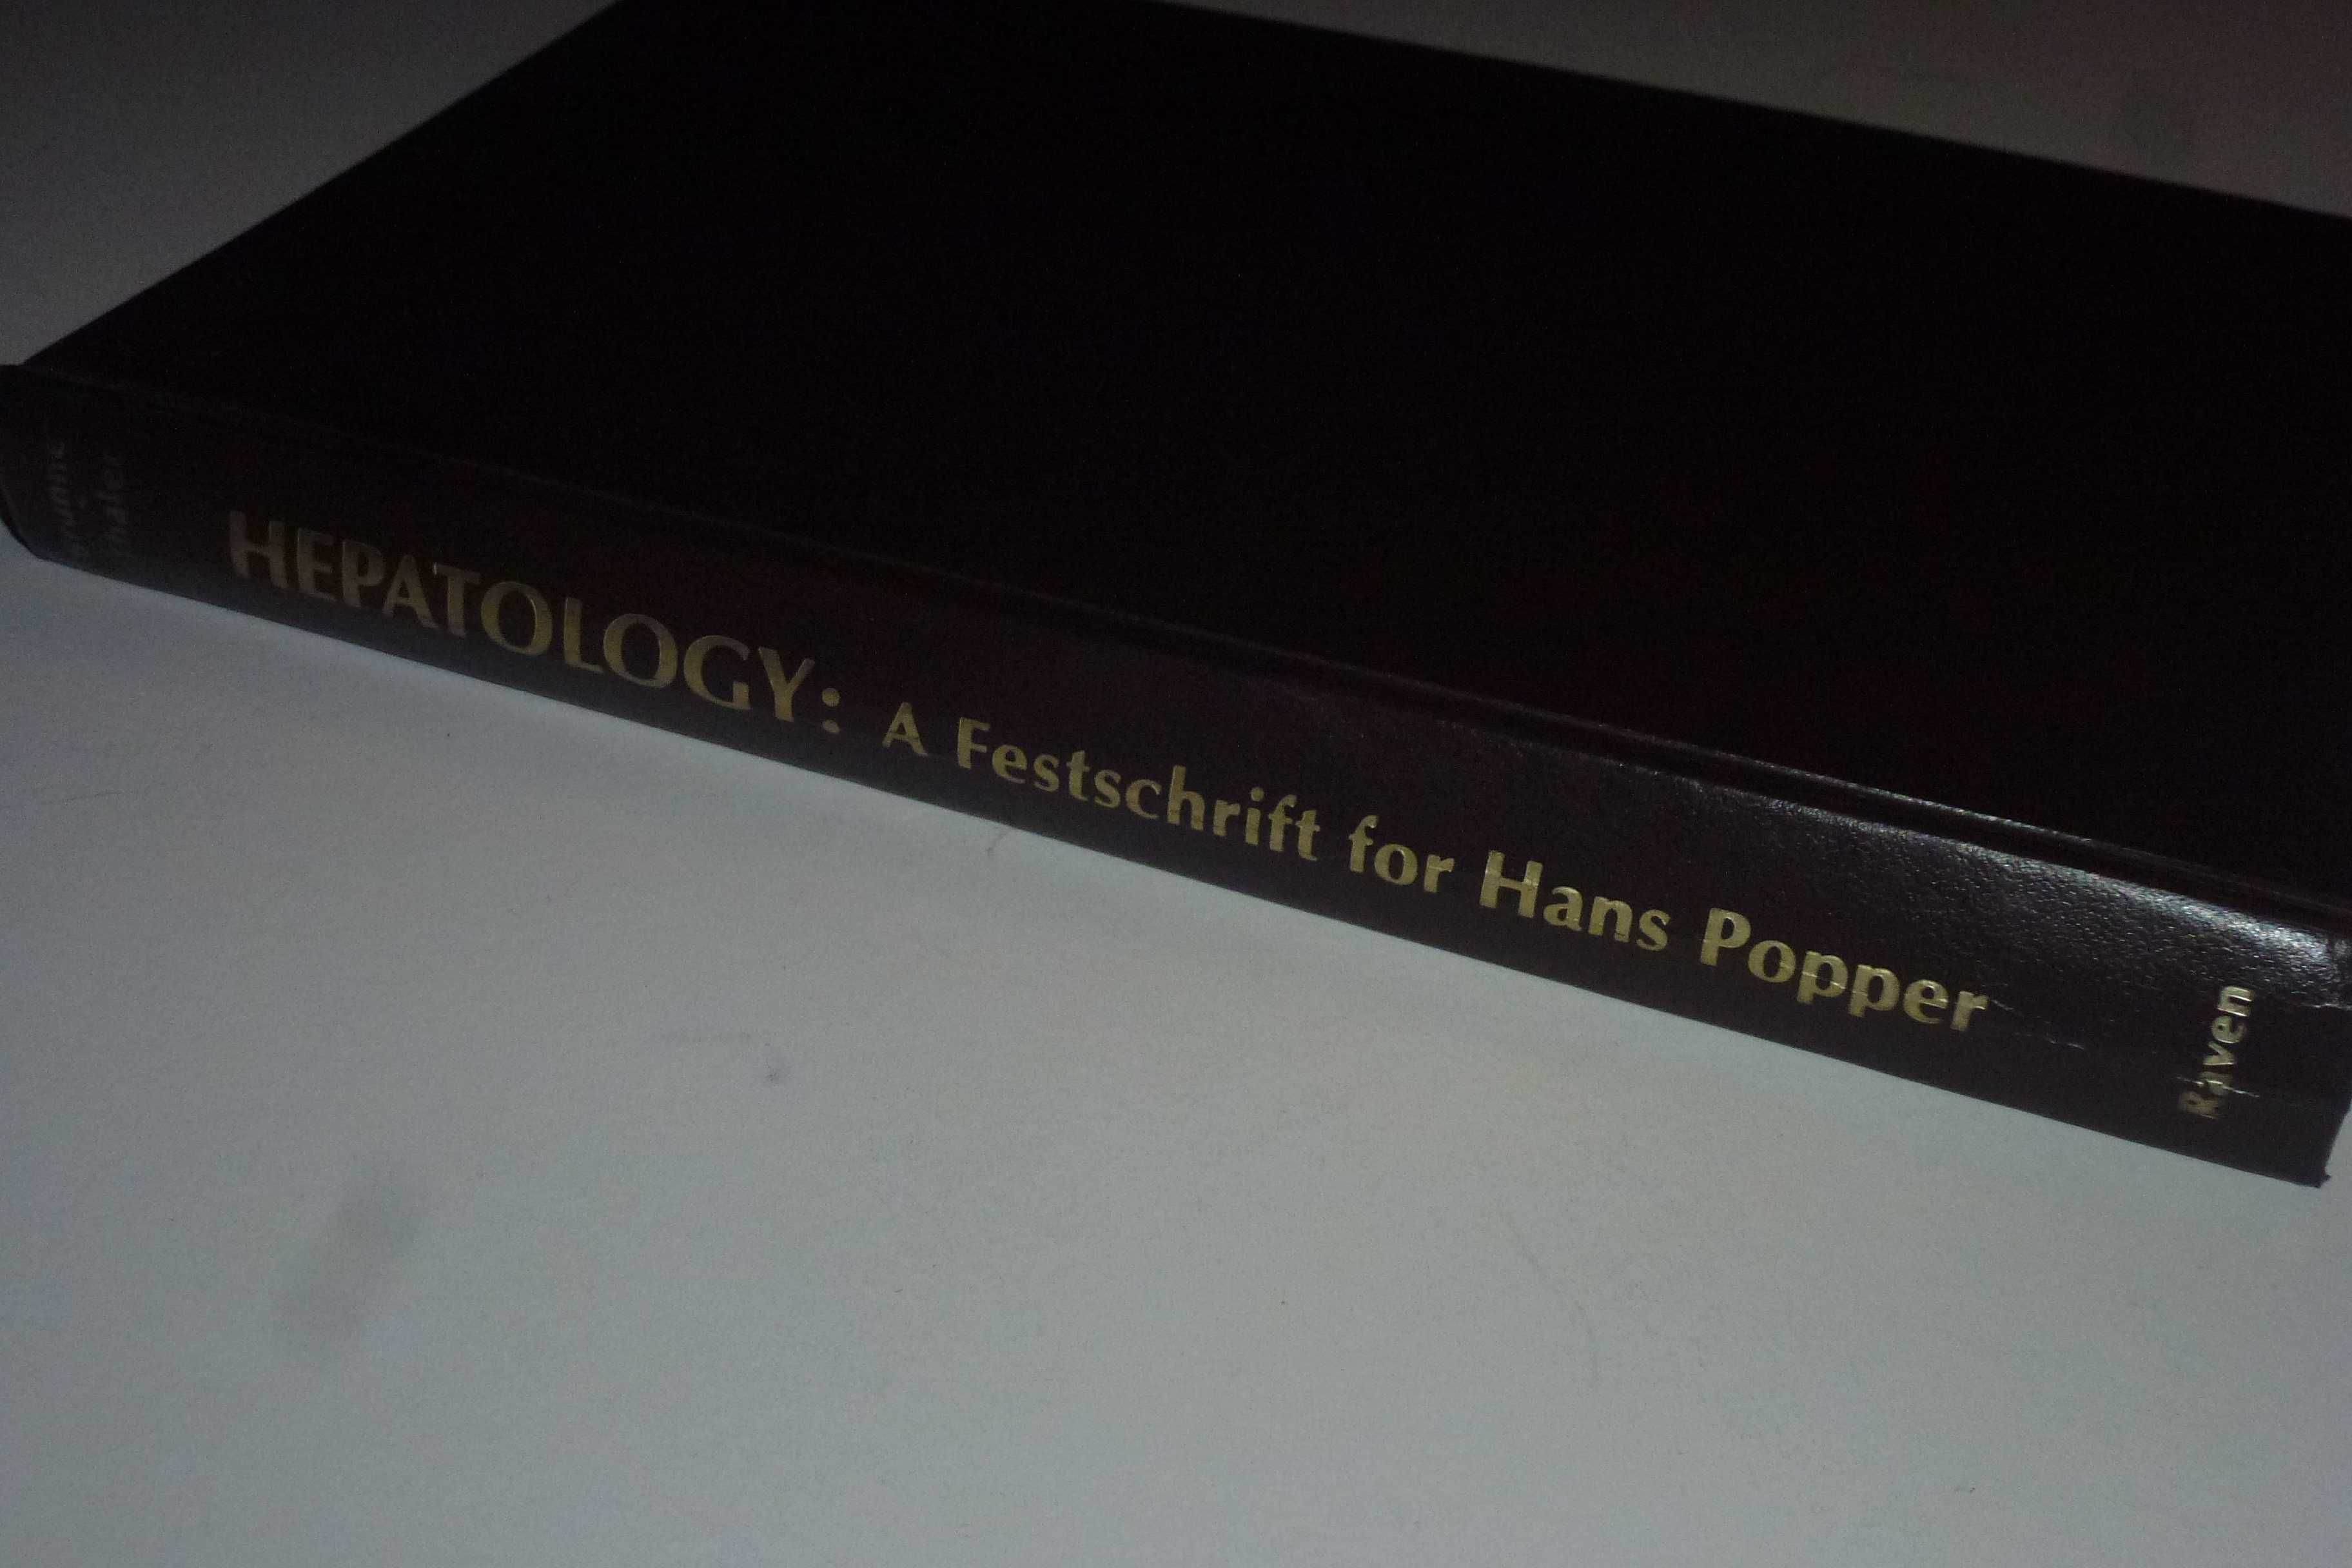 Hepatology: A Festschrift for Hans Popper